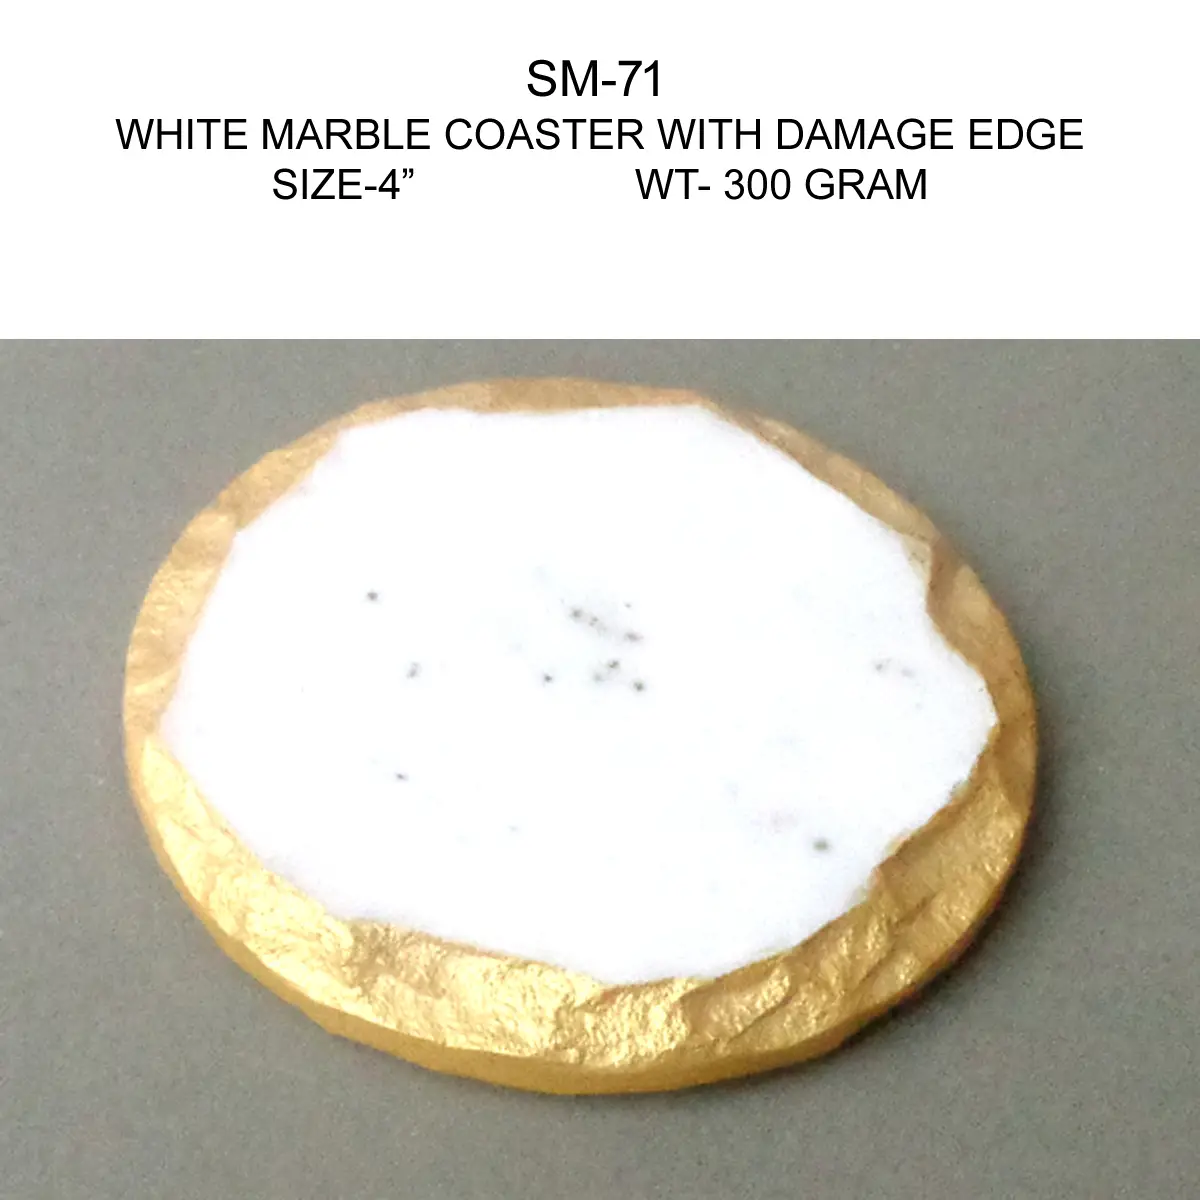 WHITE MARBLE COASTER WITH DAMAGE EDGE